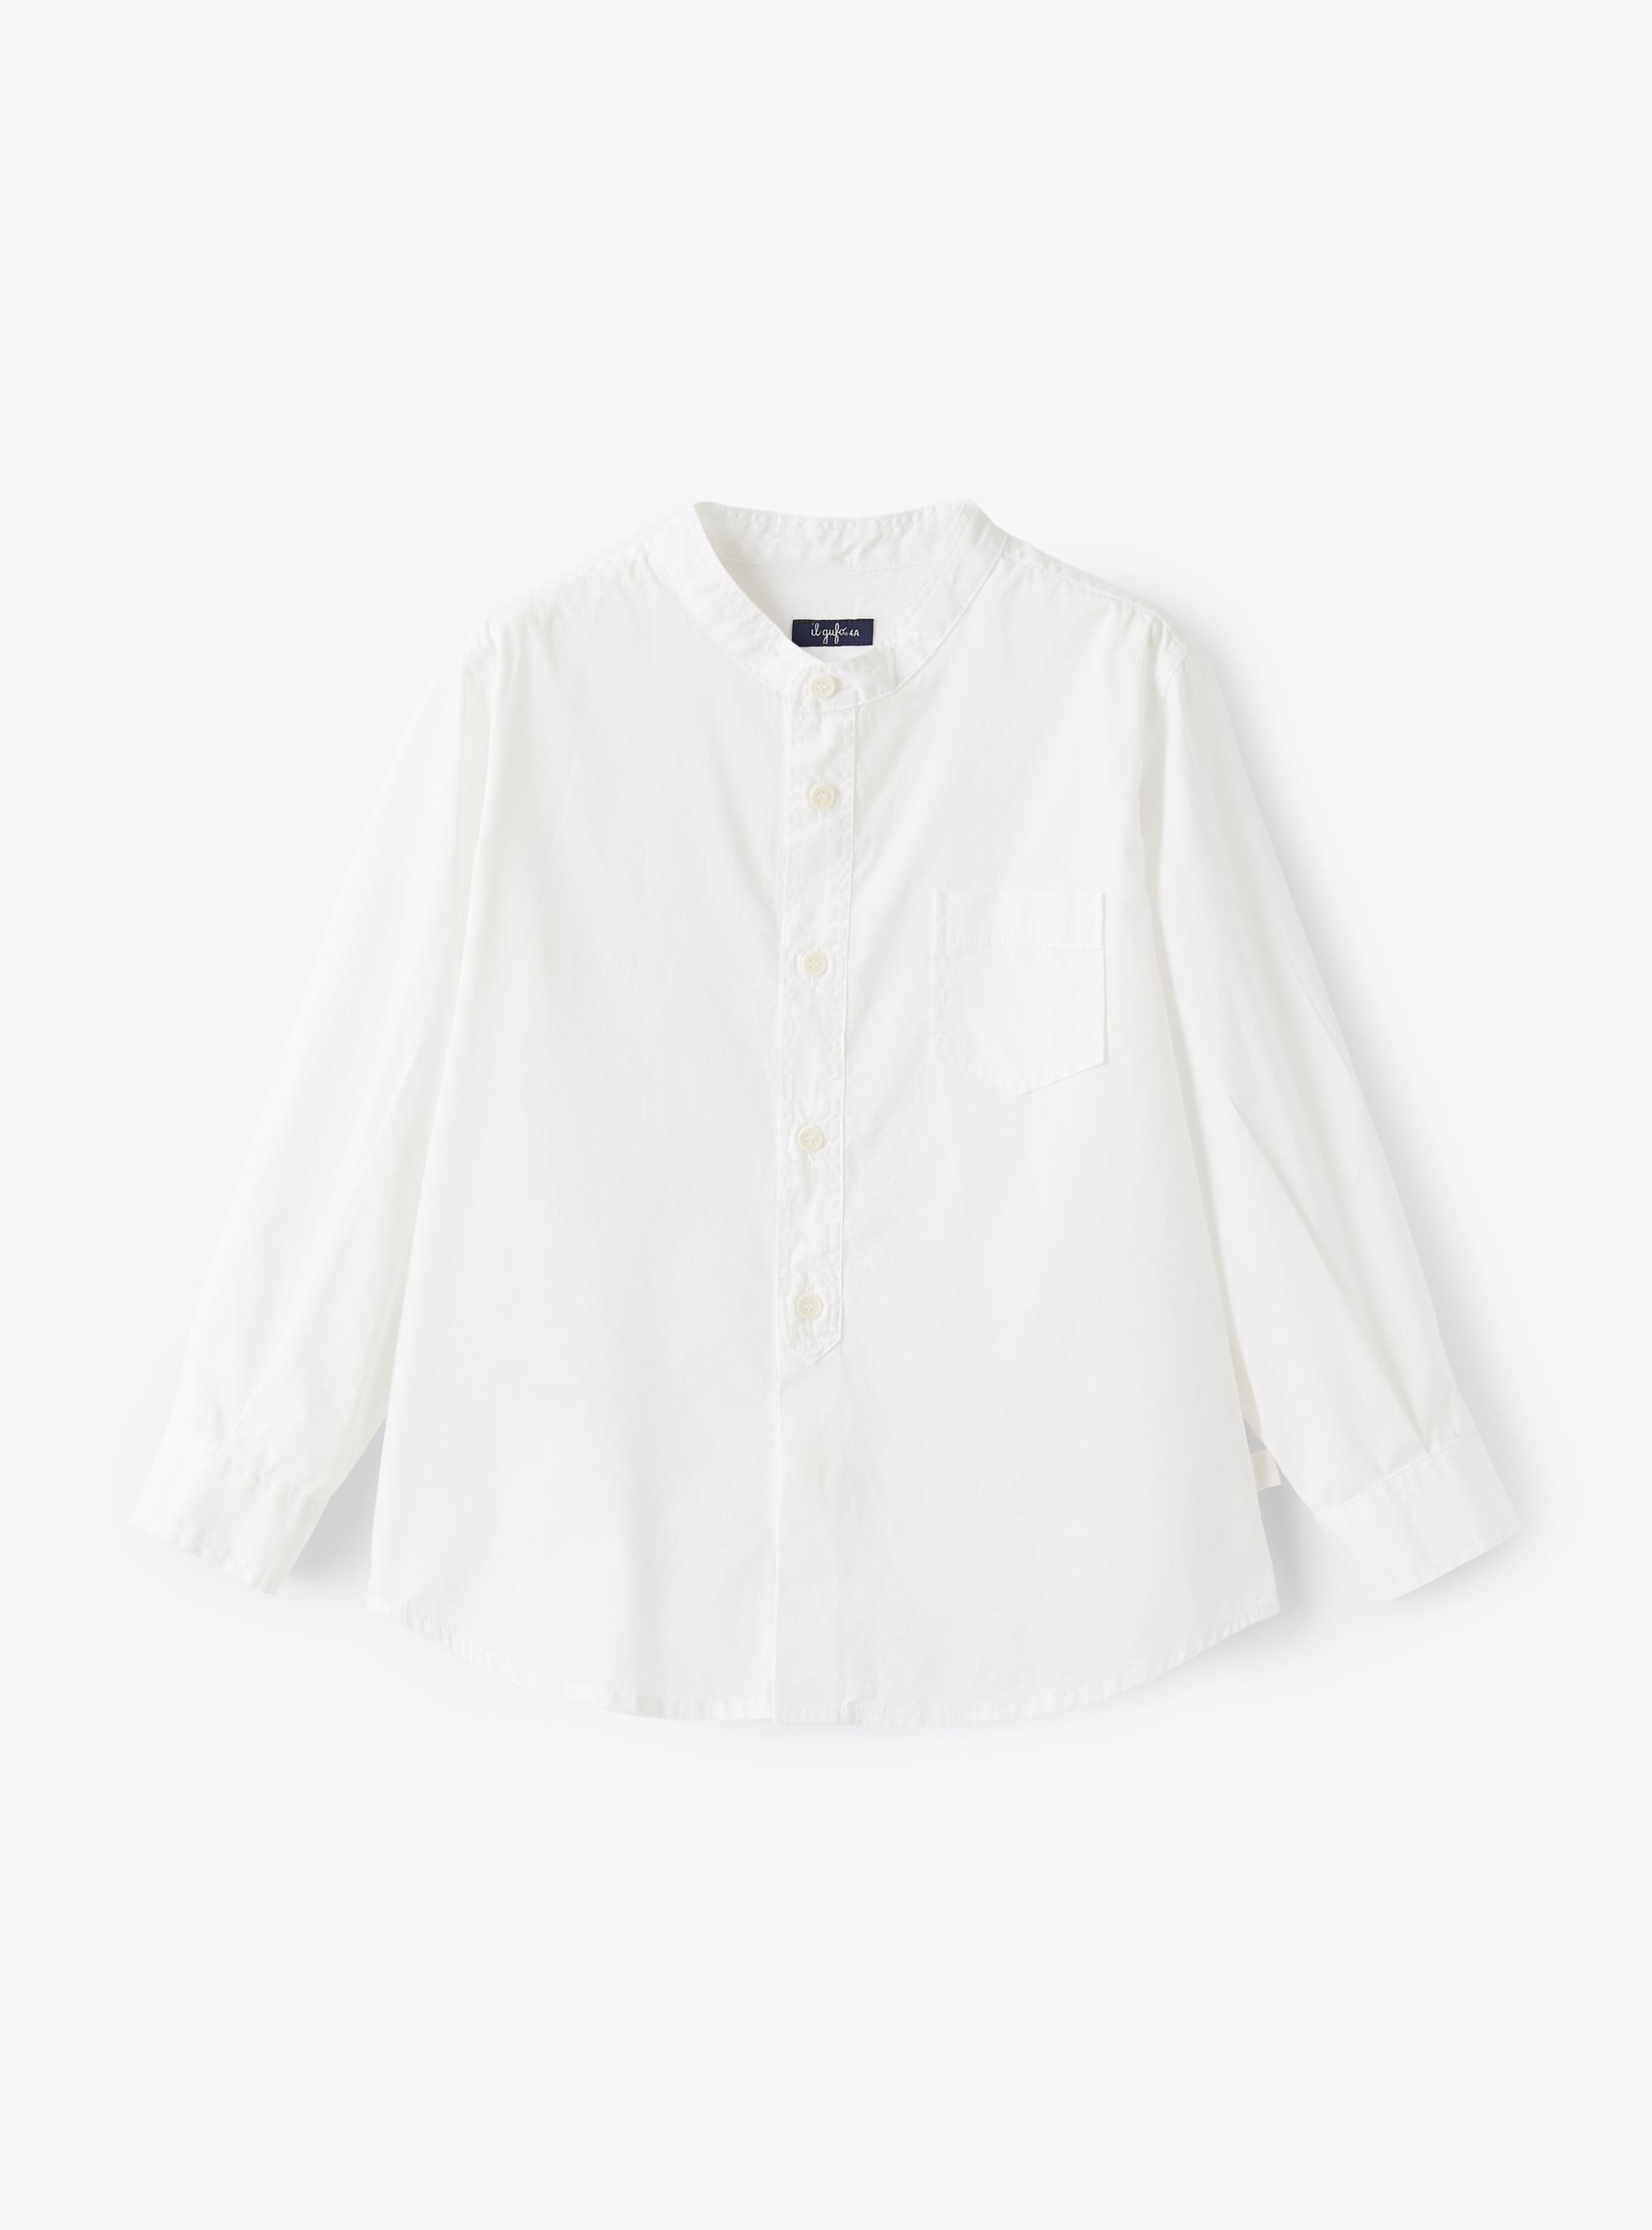 Mandarin-collar shirt in white poplin - Shirts - Il Gufo